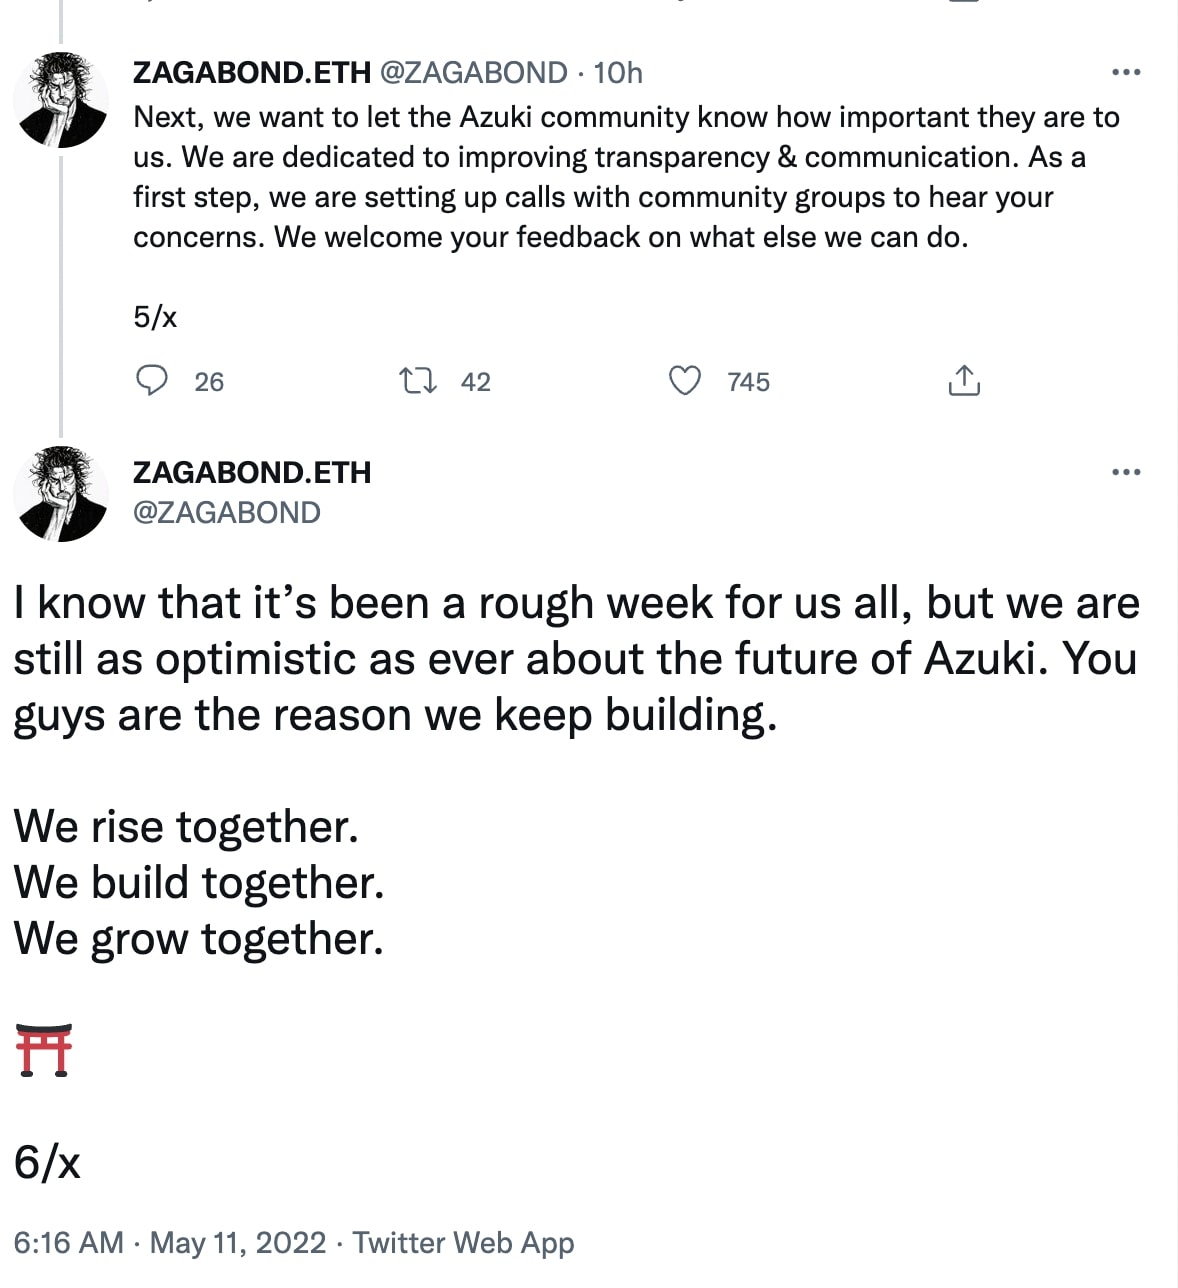 Zagabond's statement on Twitter